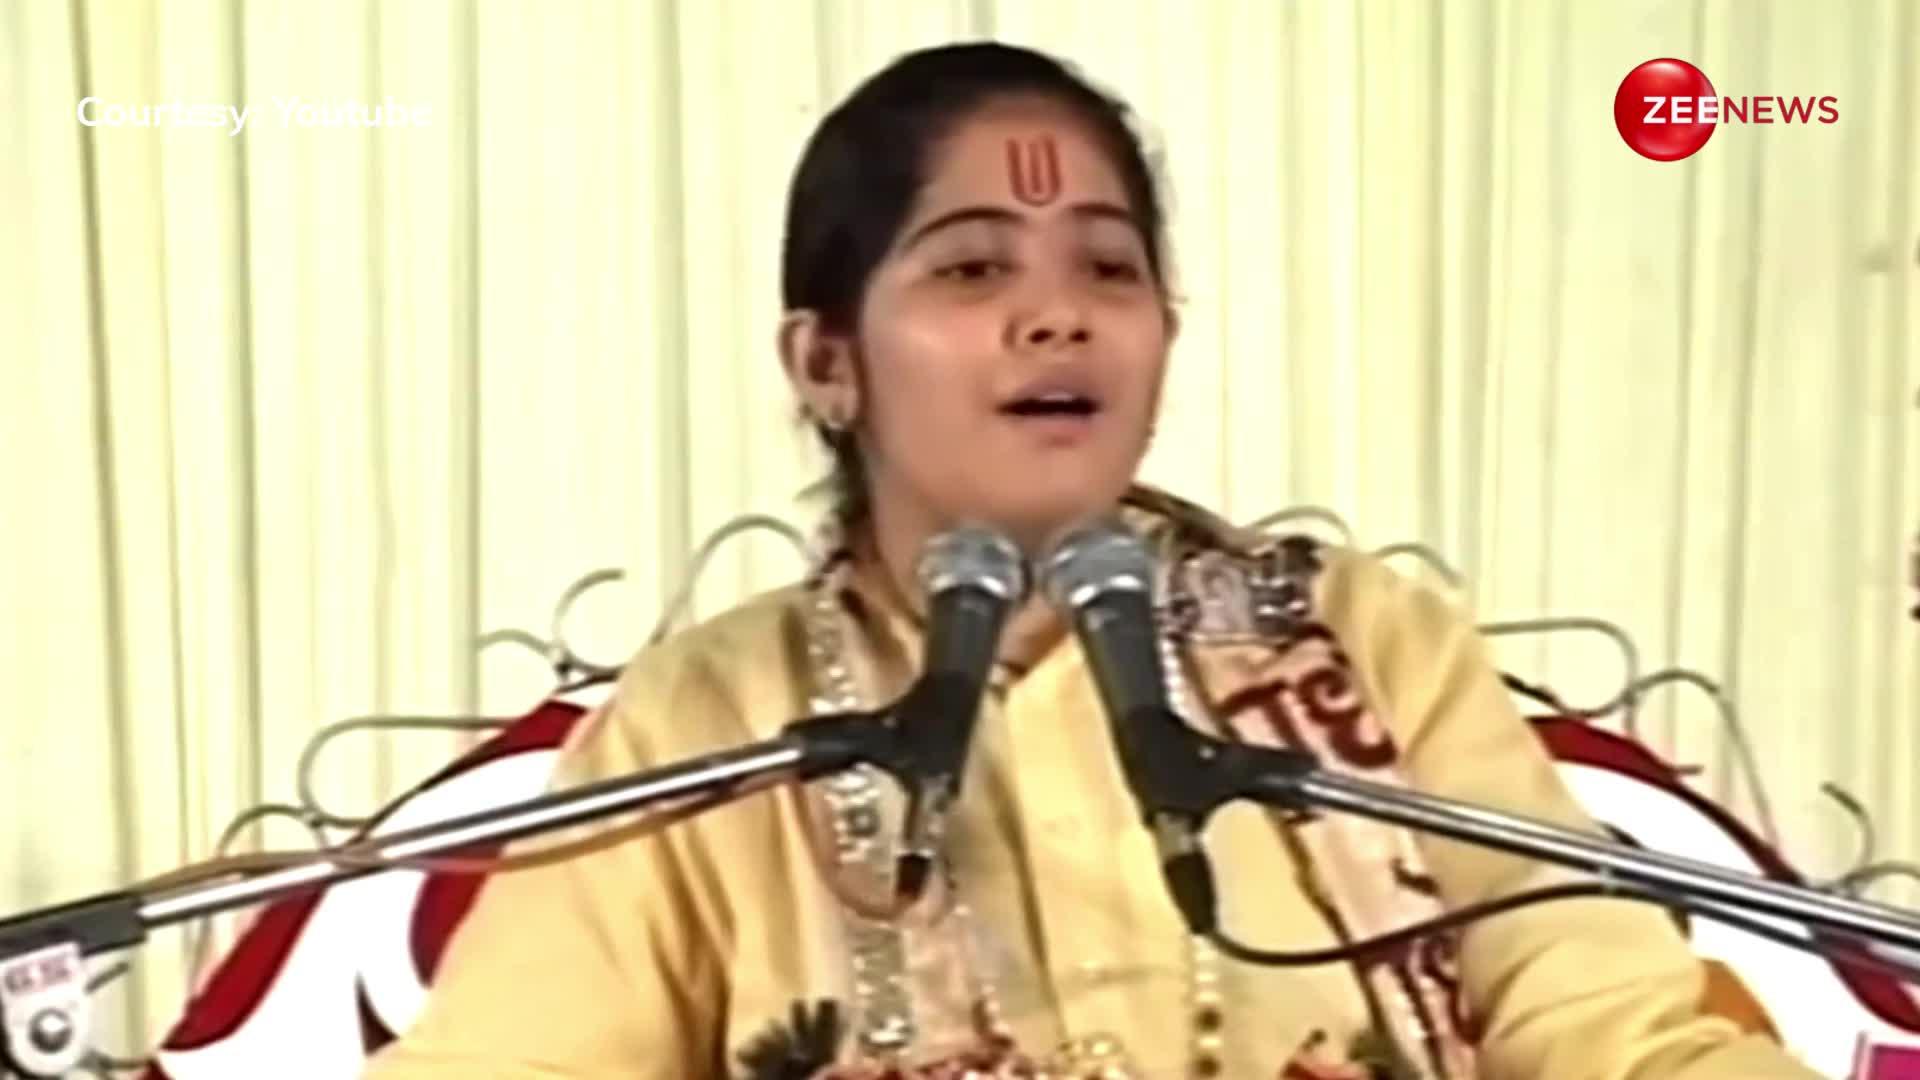 भजन गाते हुए आखिर क्यों रोने लगीं Jaya Kishori? सोशल मीडिया पर लाखों लोगों ने देखा ये वीडियो